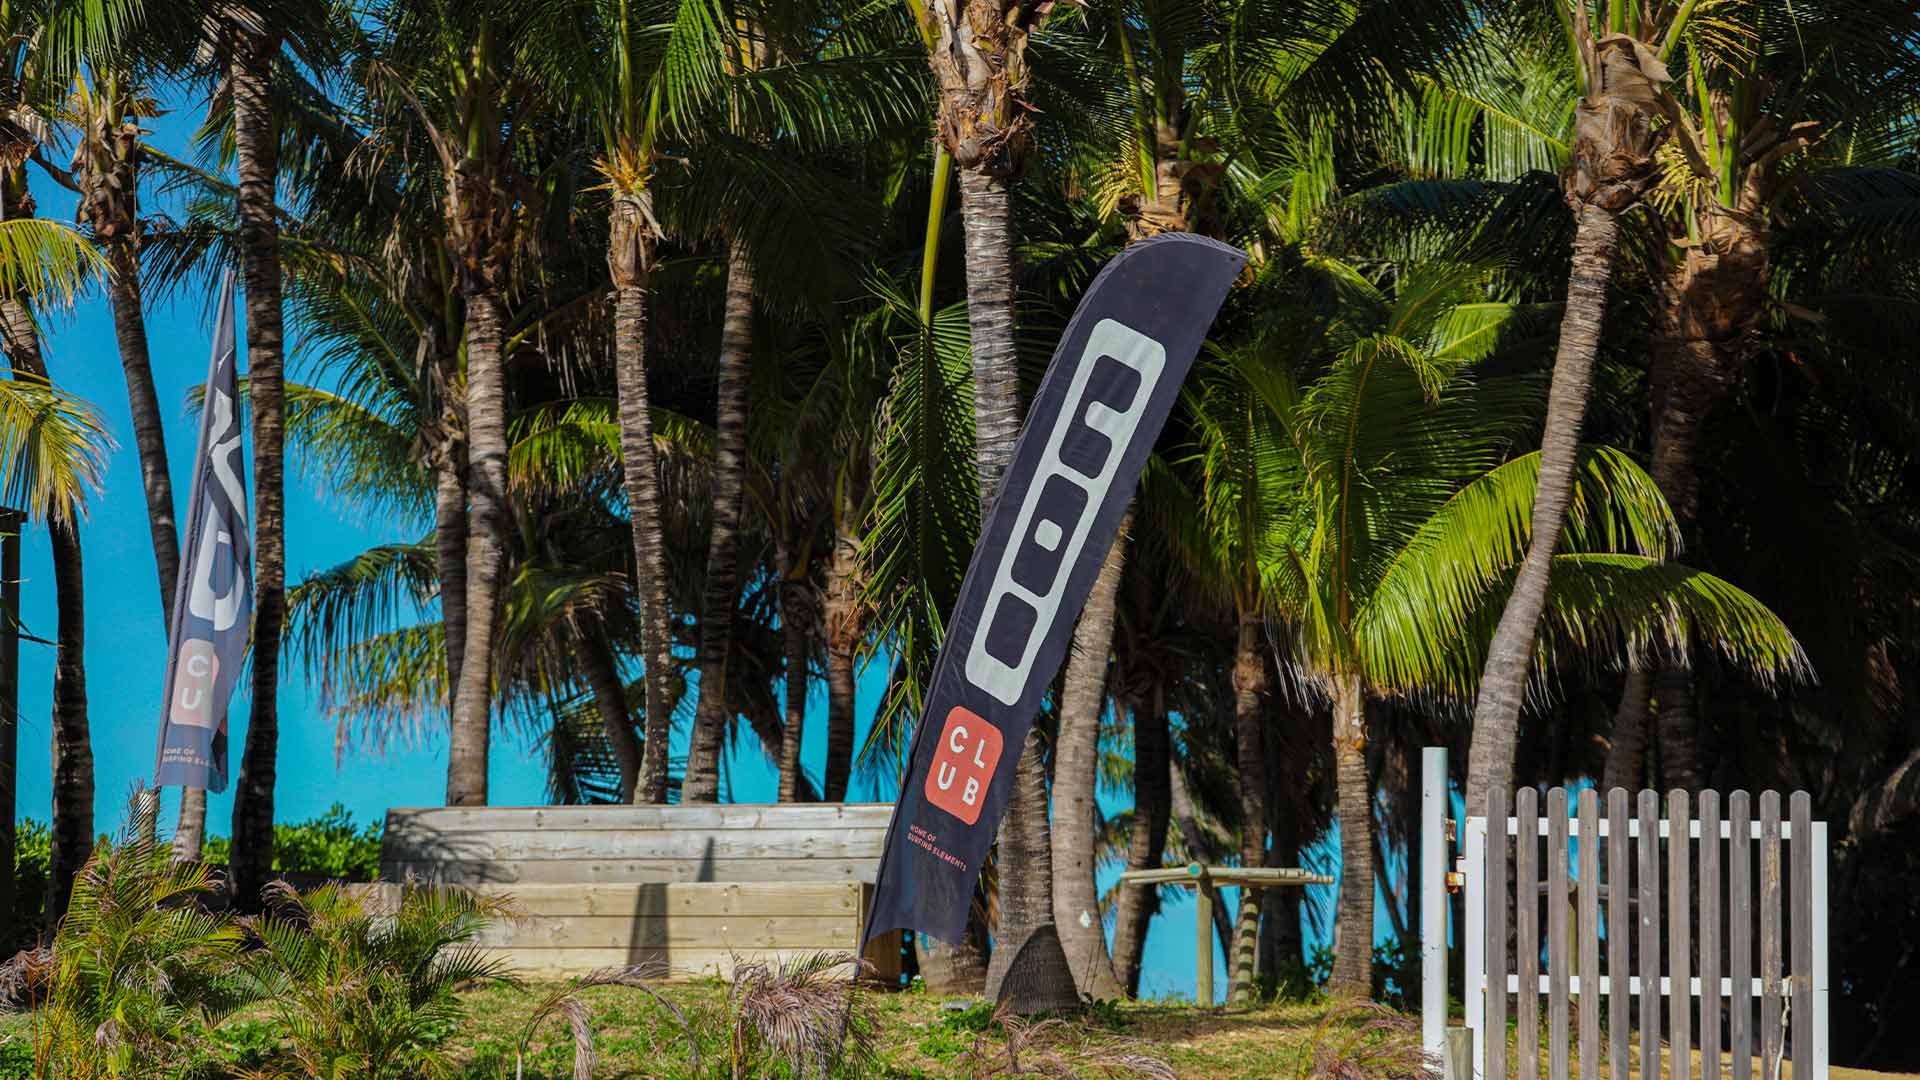 Erster Blick auf den Eingang des Ion Club Le Morne in Mauritius, wo sich die berühmte One Eye Welle befindet.